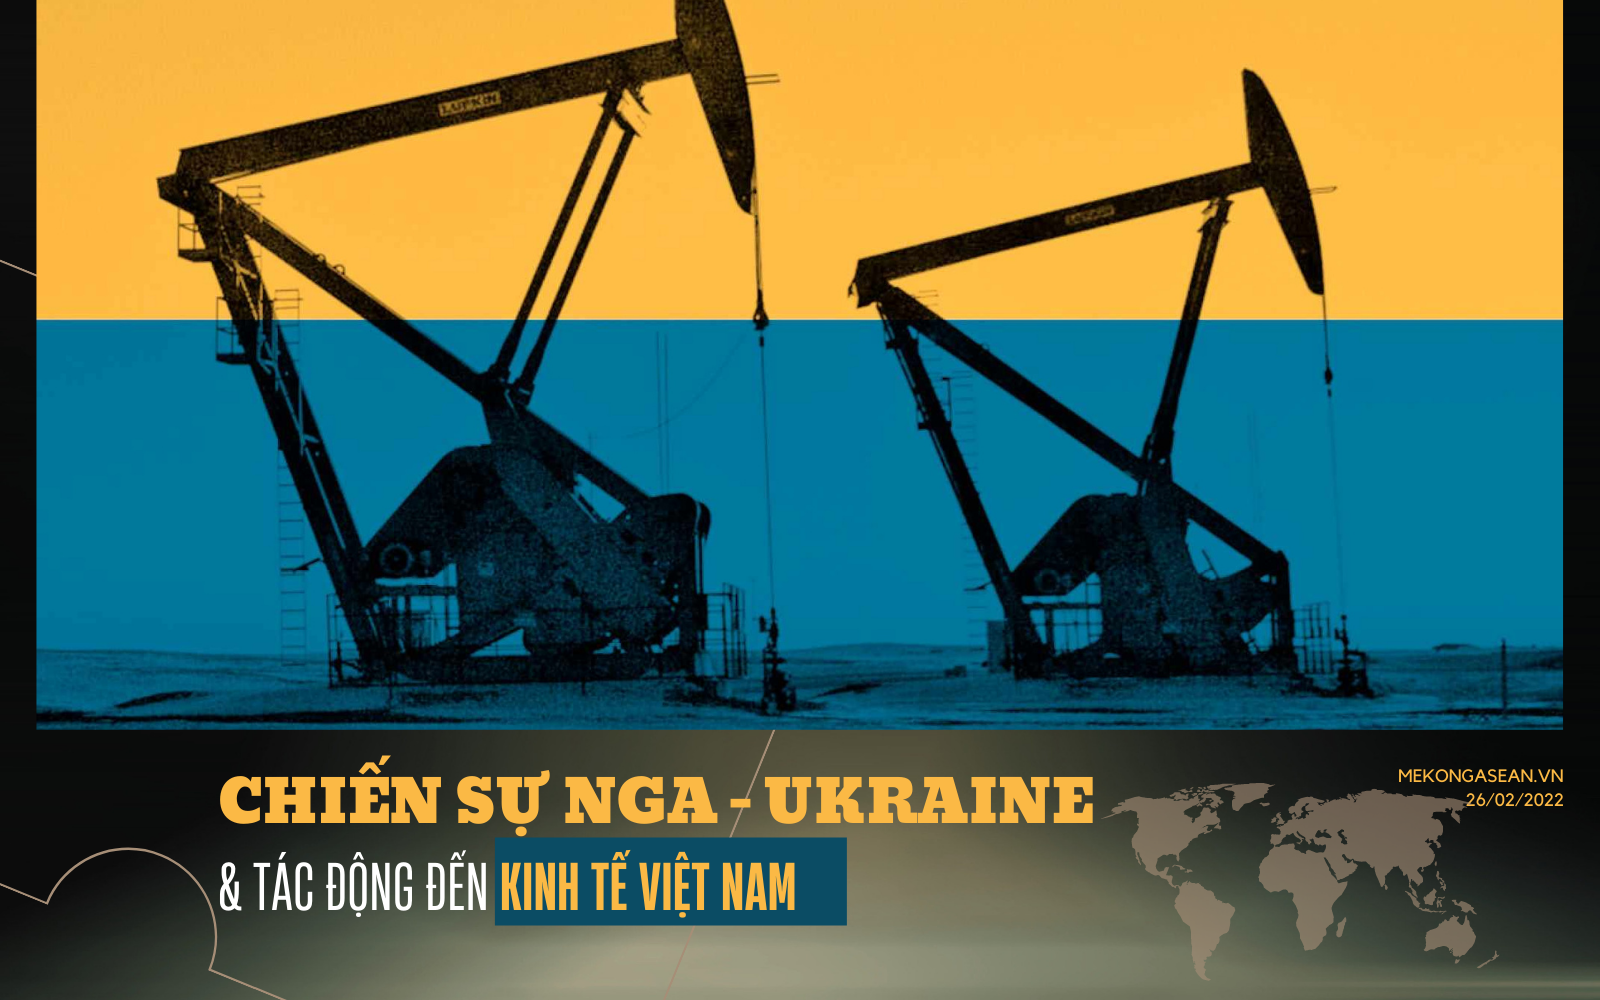 Chiến sự Nga - Ukraine tác động tới kinh tế Việt Nam như thế nào